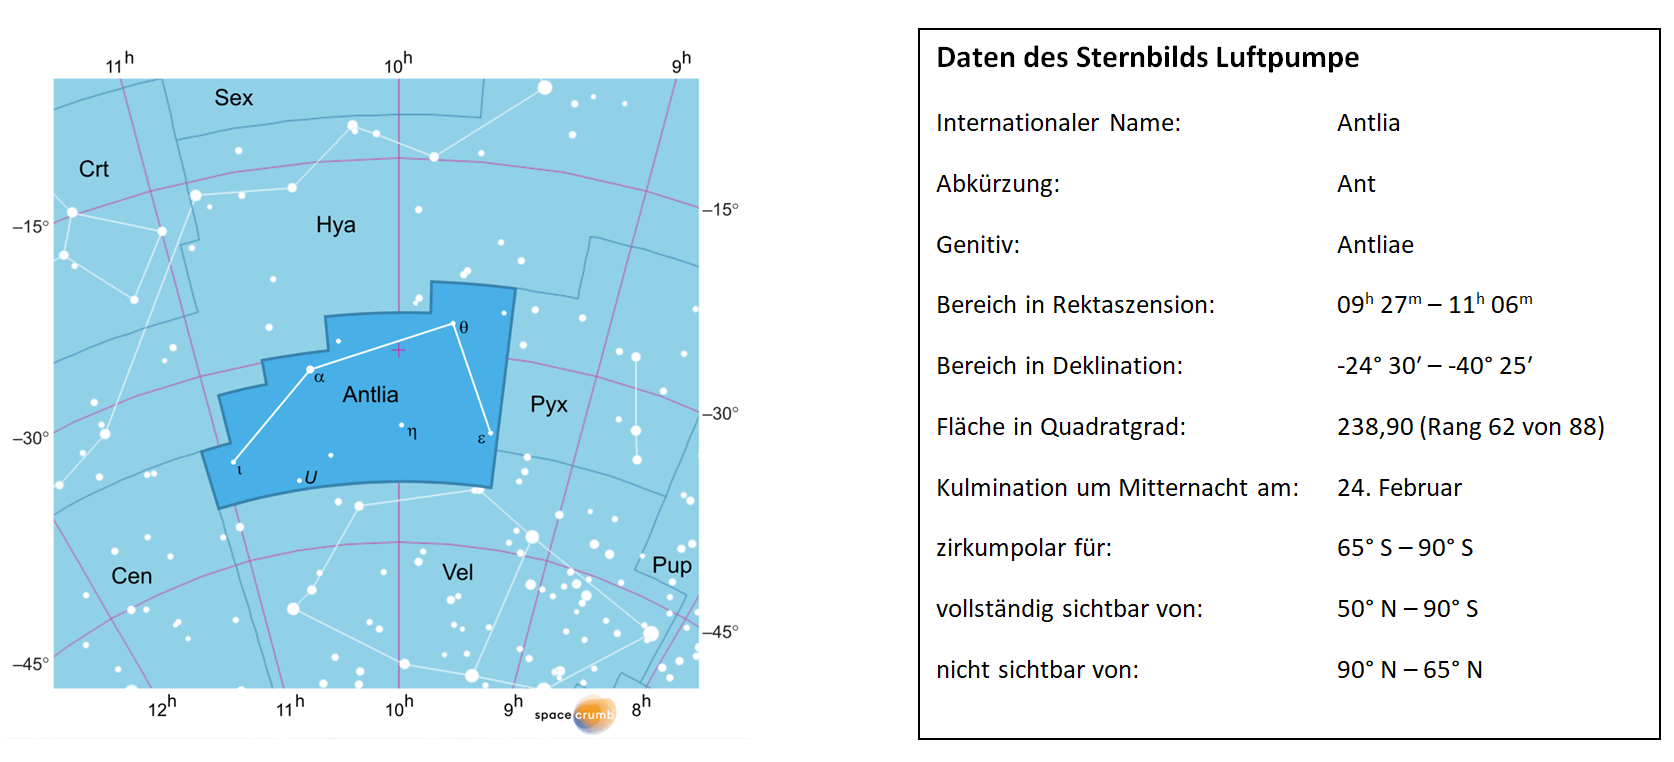 Links zeigt eine mit Koordinaten versehene  Karte eines Himmelsausschnitts weiße Sterne auf hellblauem Hintergrund. Die Fläche, die das Sternbild Luftpumpe einnimmt, ist dunkelblau hervorgehoben. Eine Tabelle rechts gibt wichtige Daten des Sternbilds Luftpumpe an.